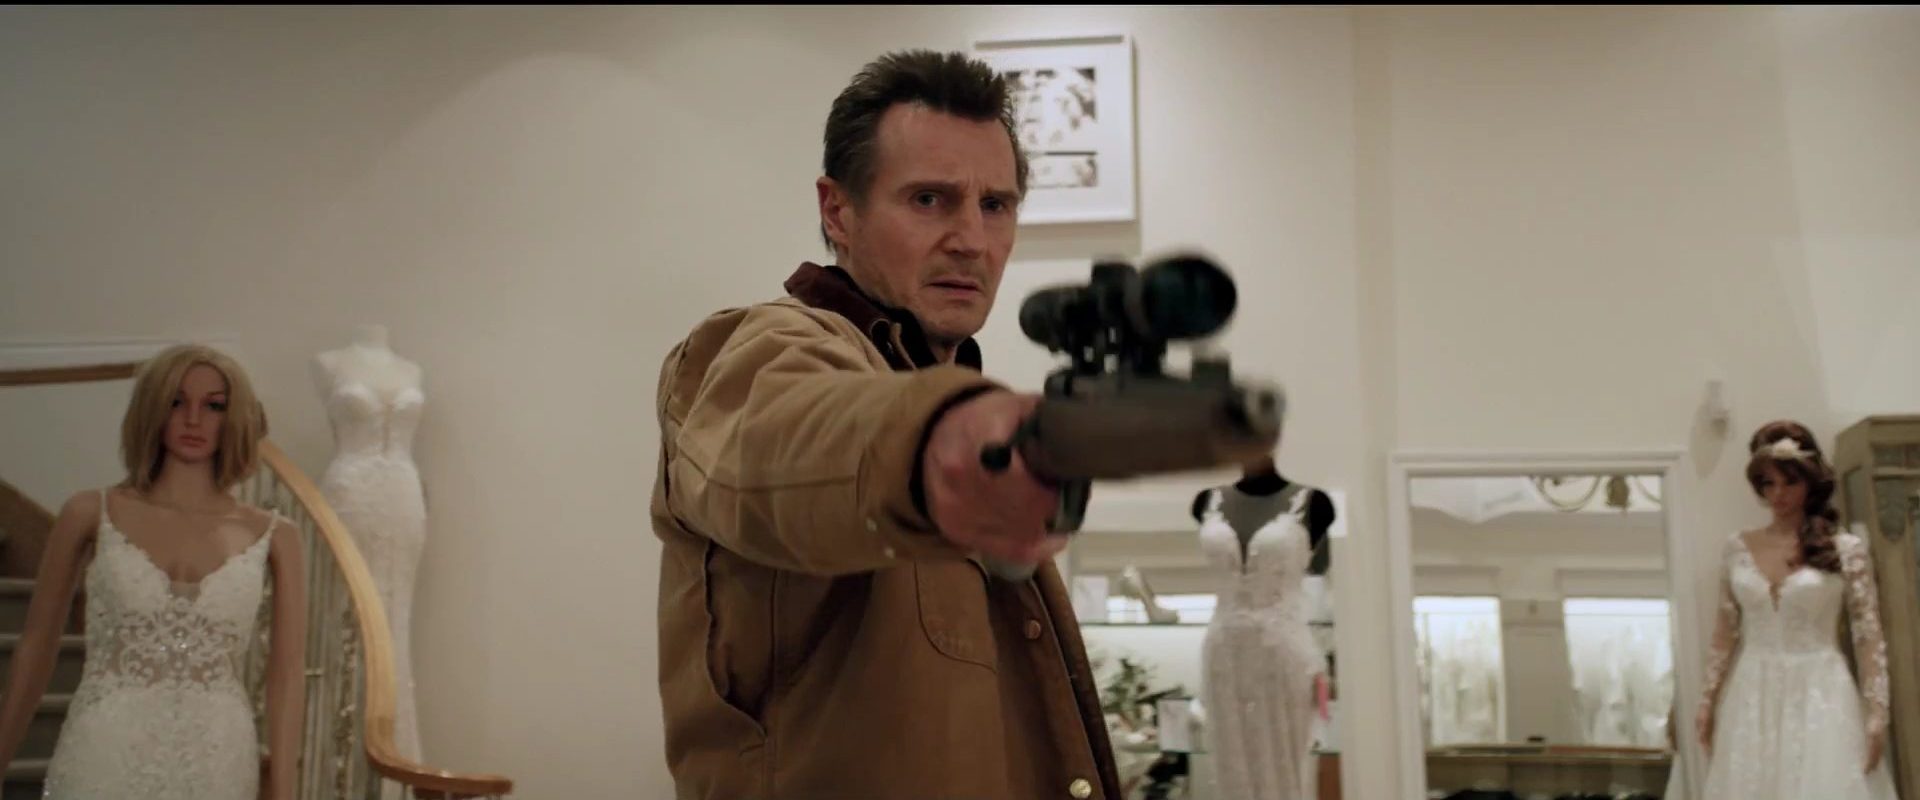 ภาพยนตร์ของแอคชั่นสตาร์ชื่อดังอย่าง Liam Neeson กลับมาฮิตอีกครั้งบน Netflix